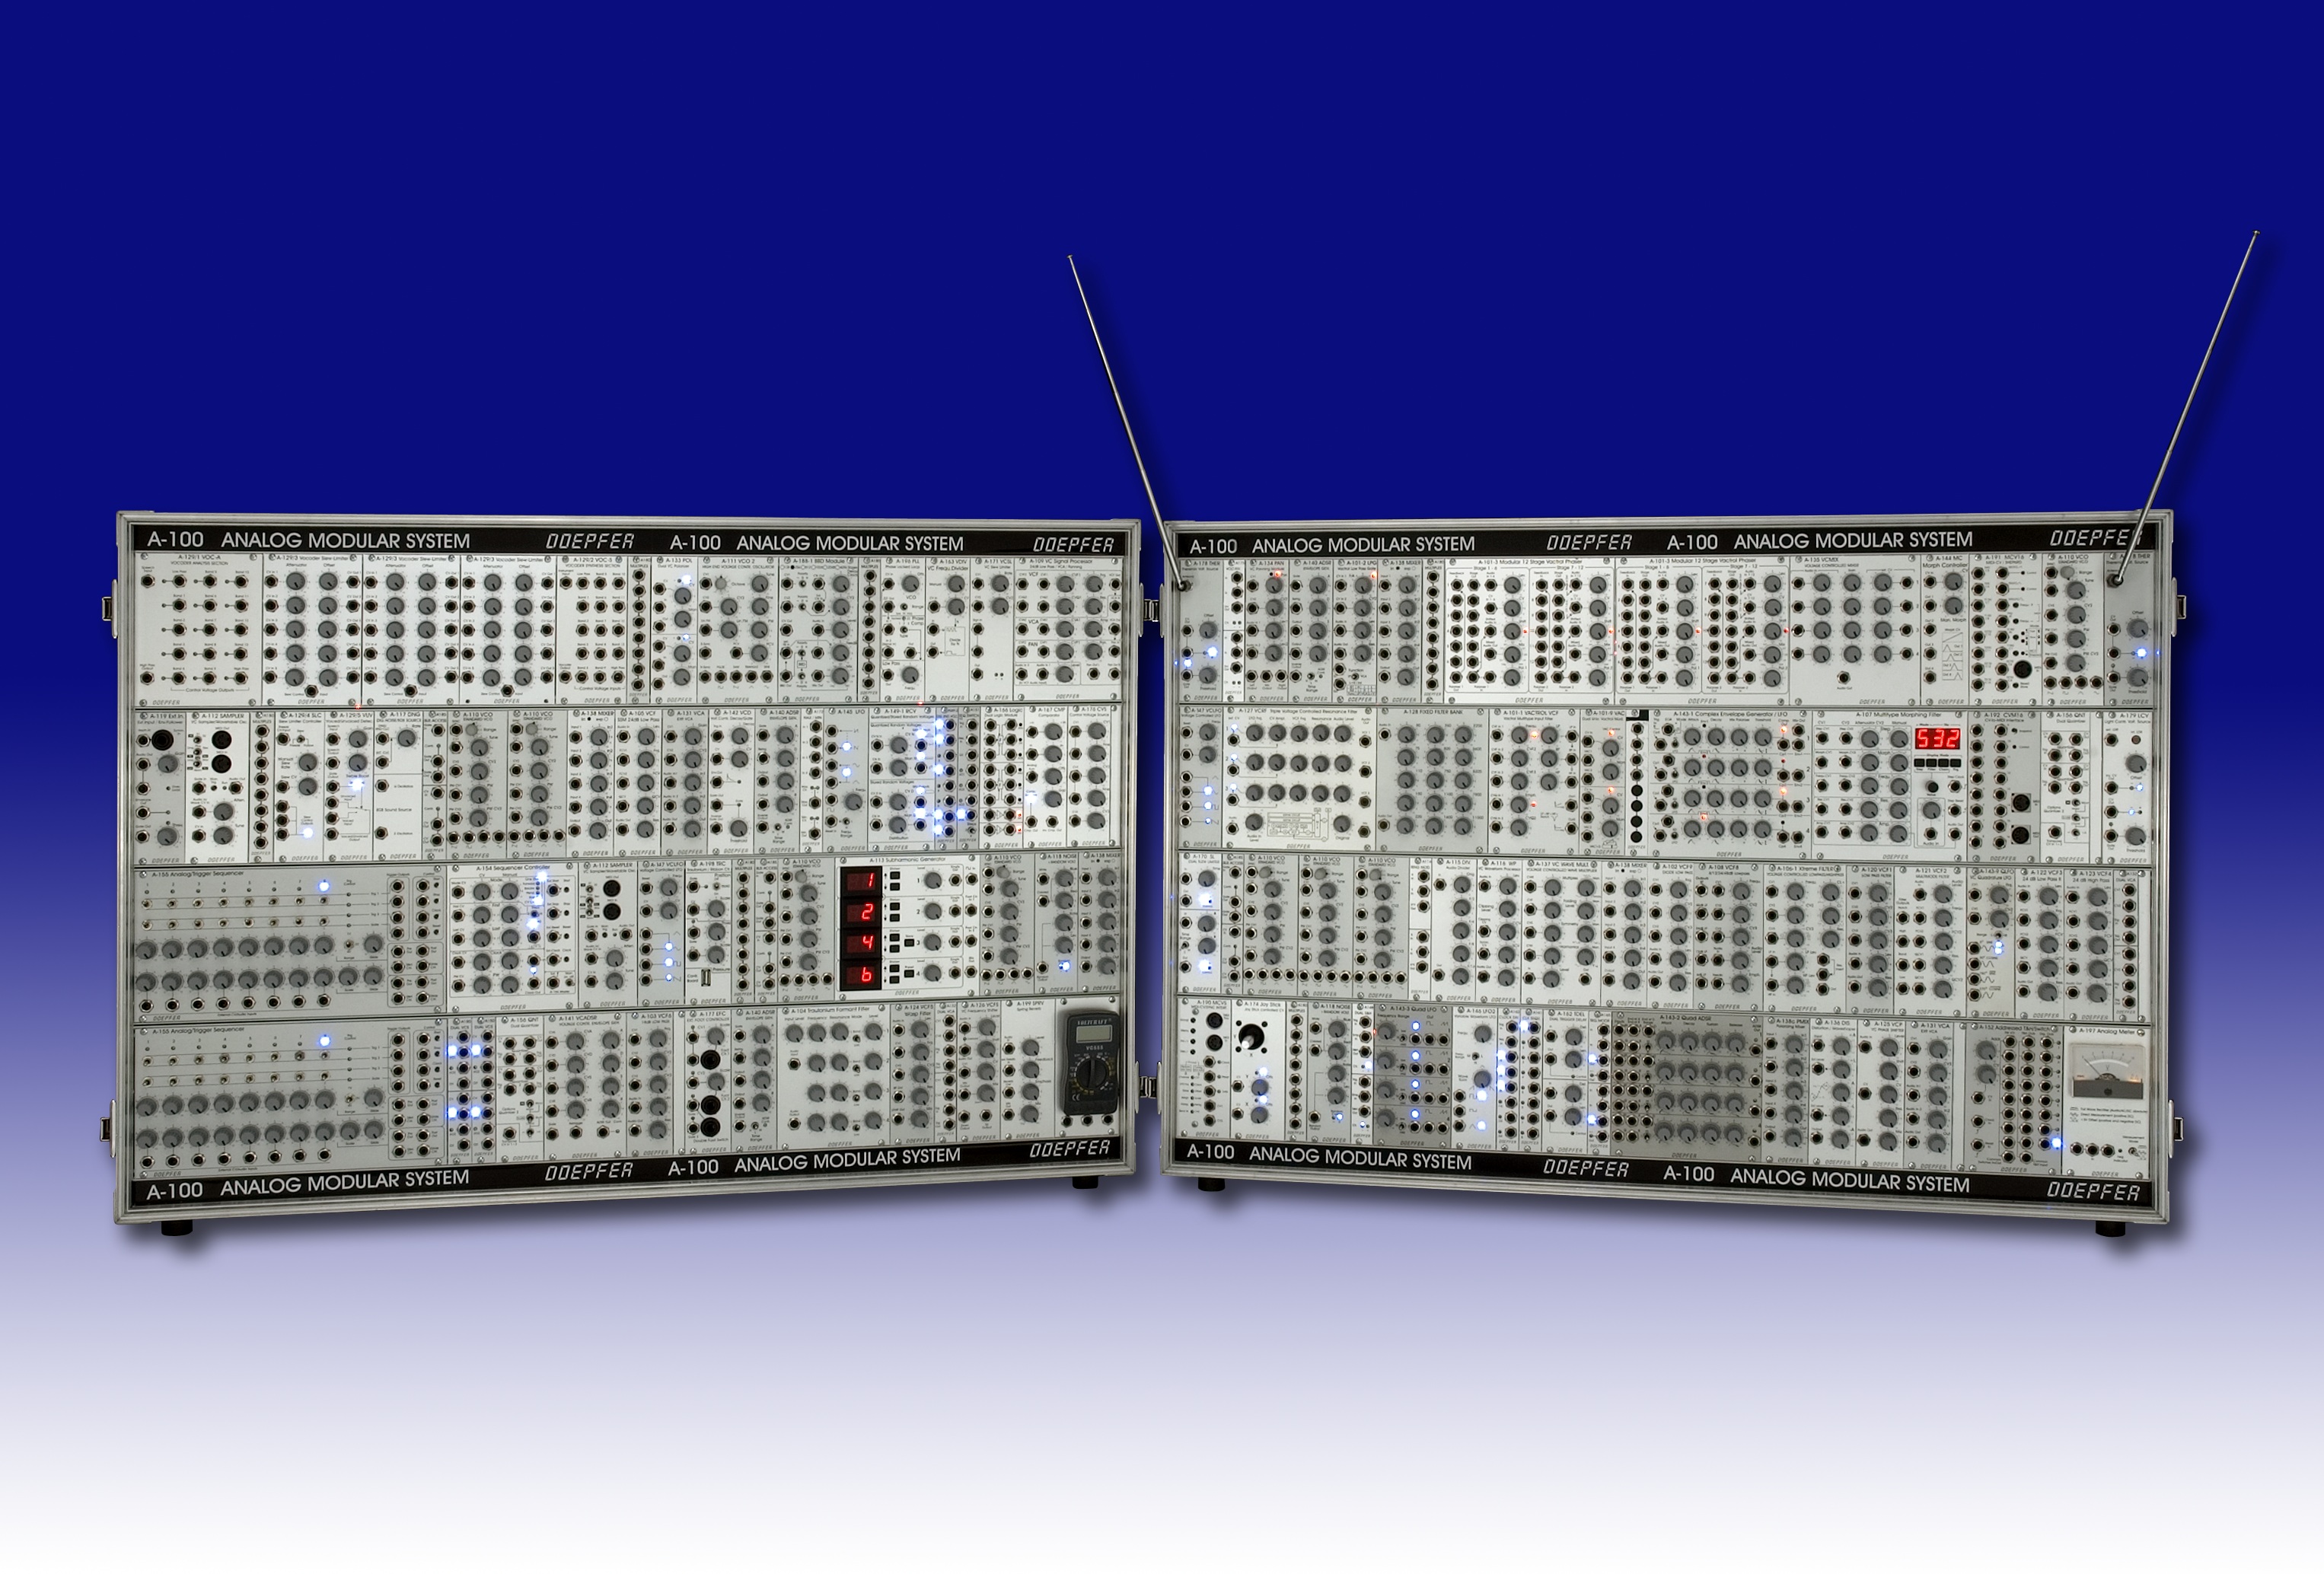 A-100 Analog Modular System Odepher. A100 Analog Modular System Ishome. Модуляр с матрицей синтезатор. Analog Modular Synth a100.